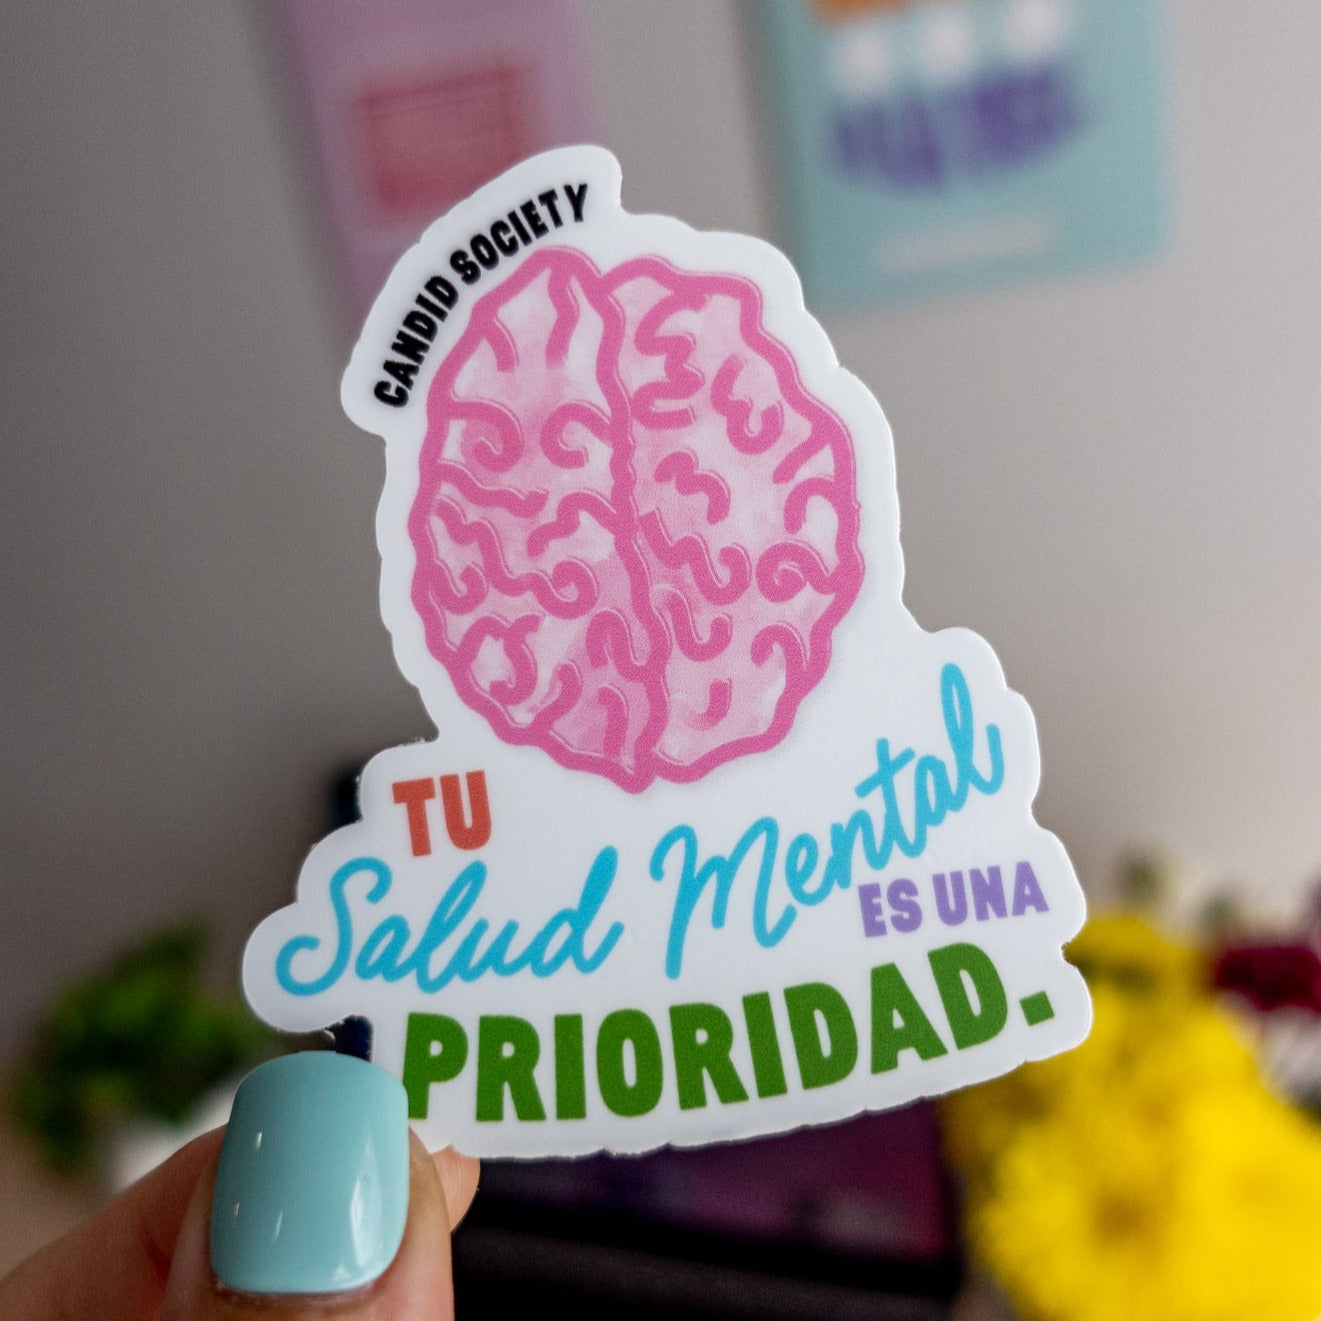 50 - Tu Salud Mental es una Prioridad - Premium Sticker